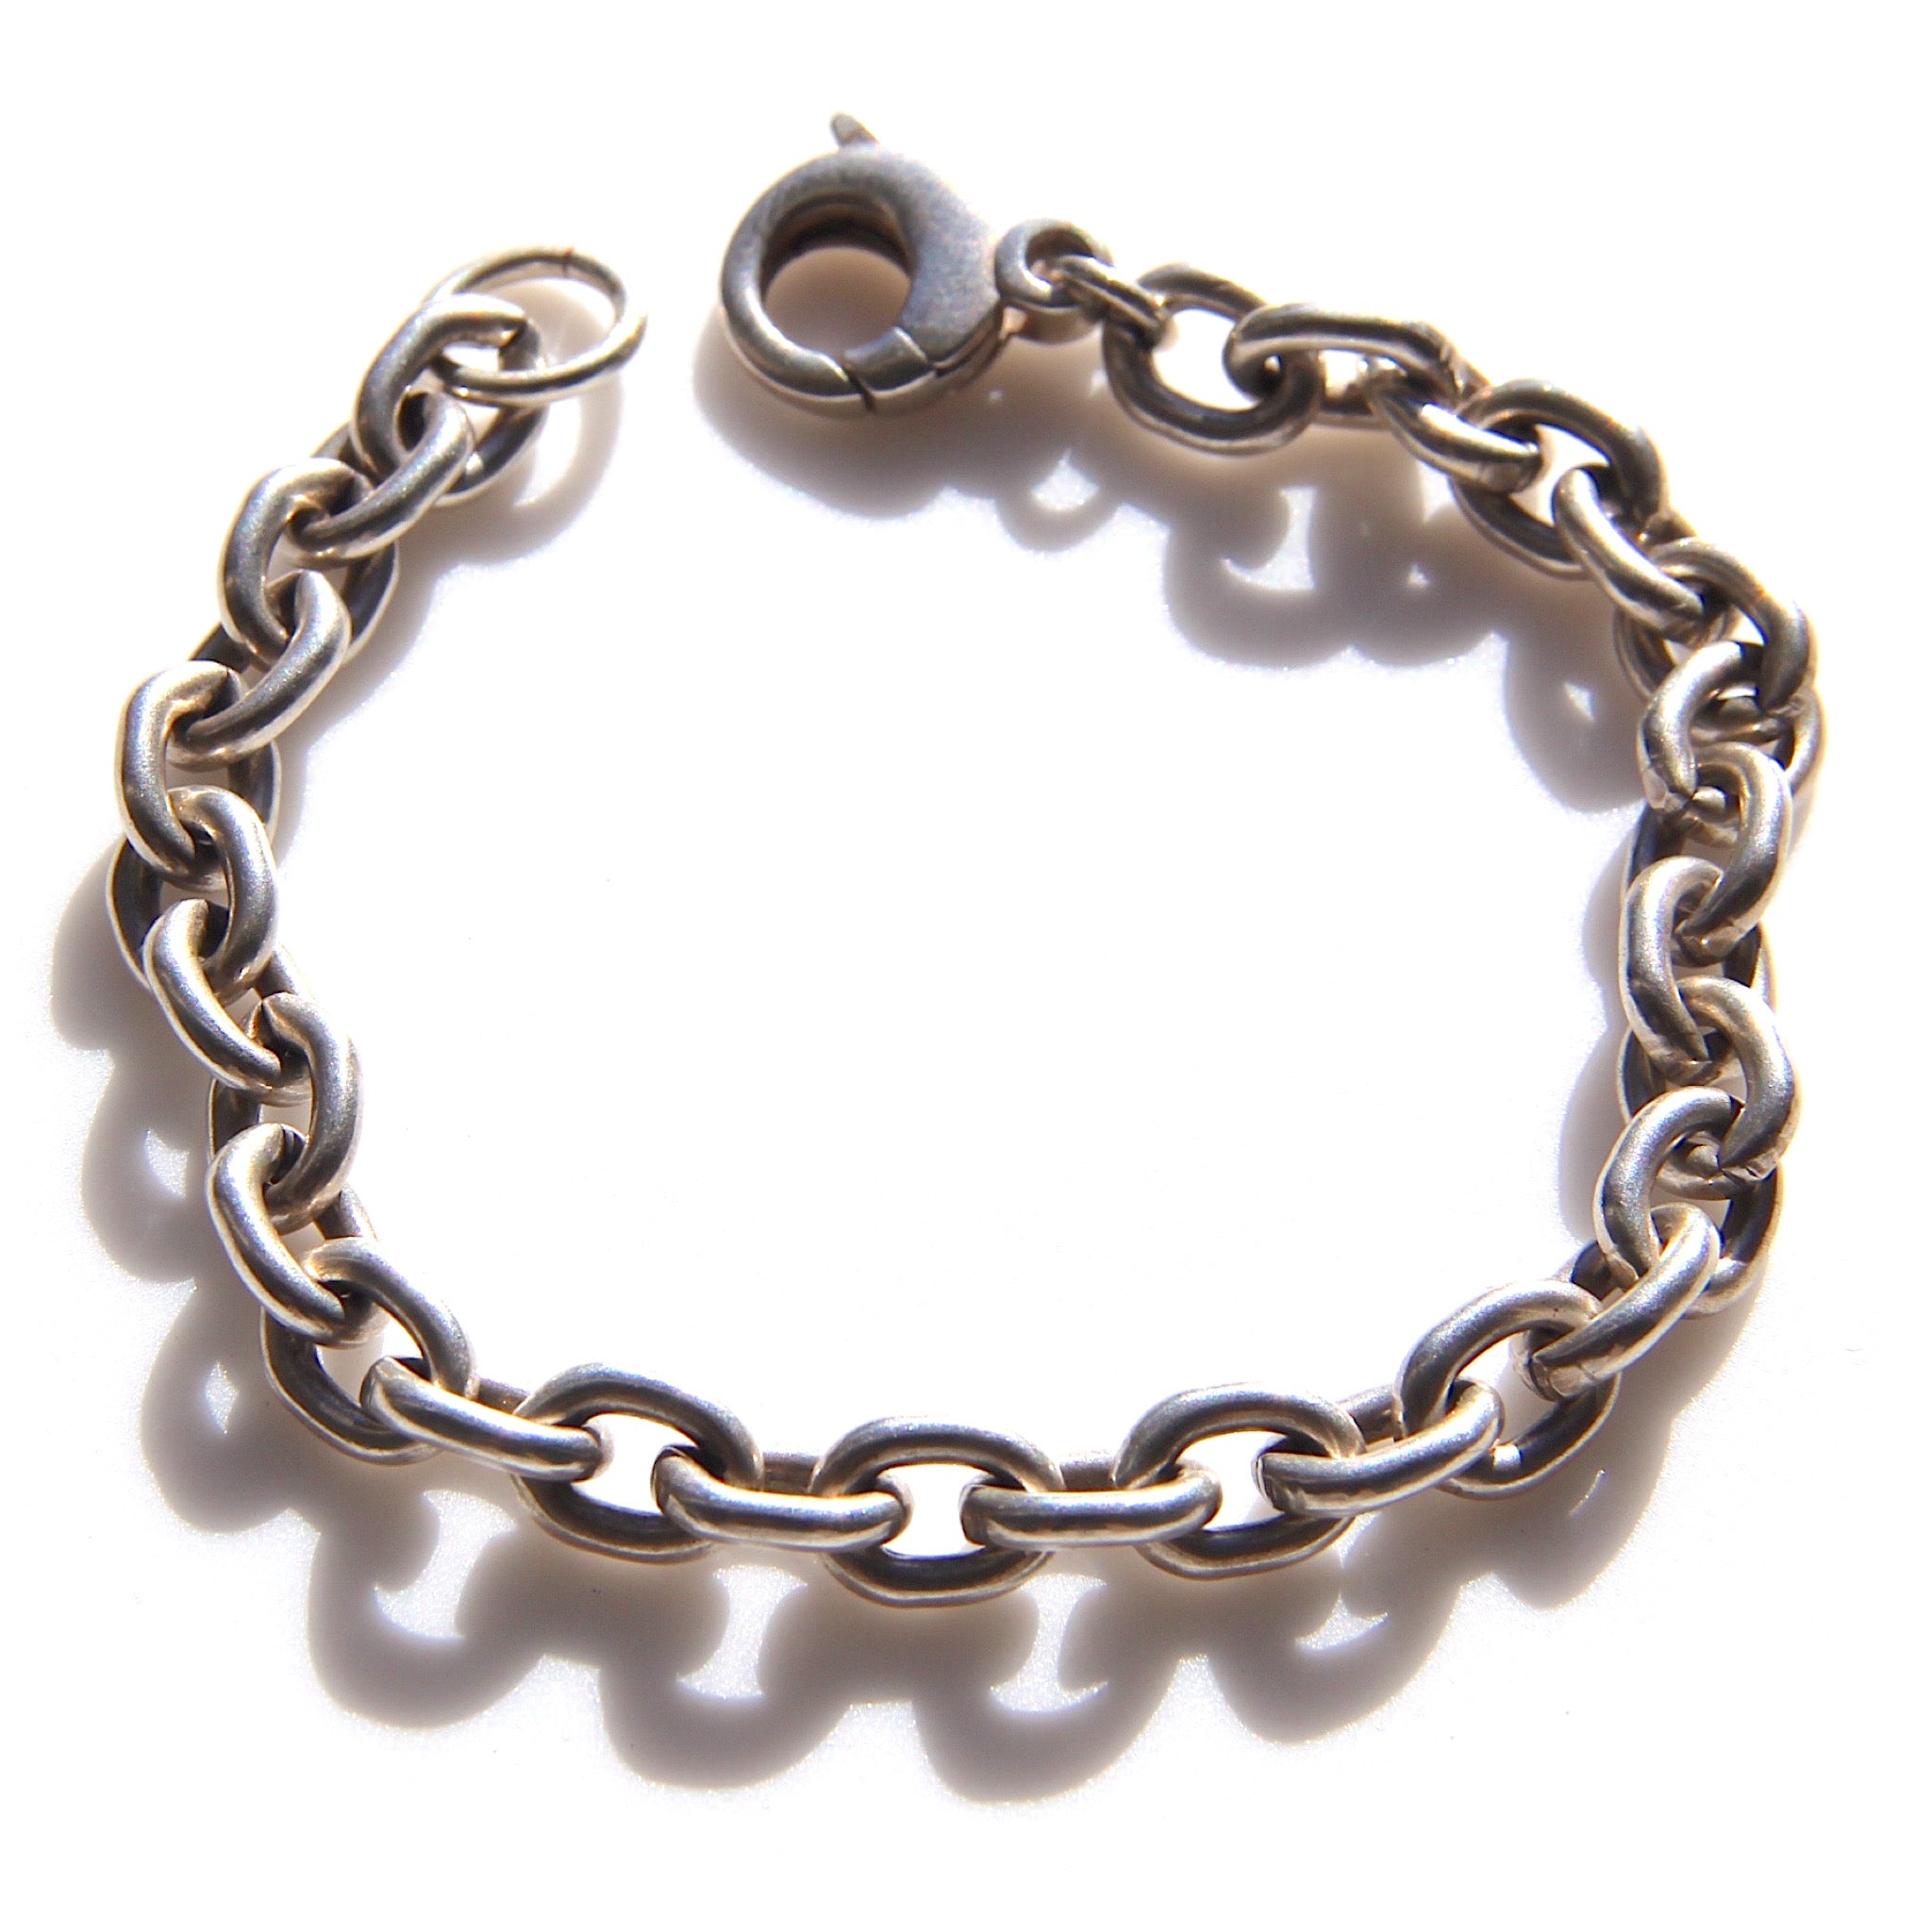 Heavy-weight oval link bracelet